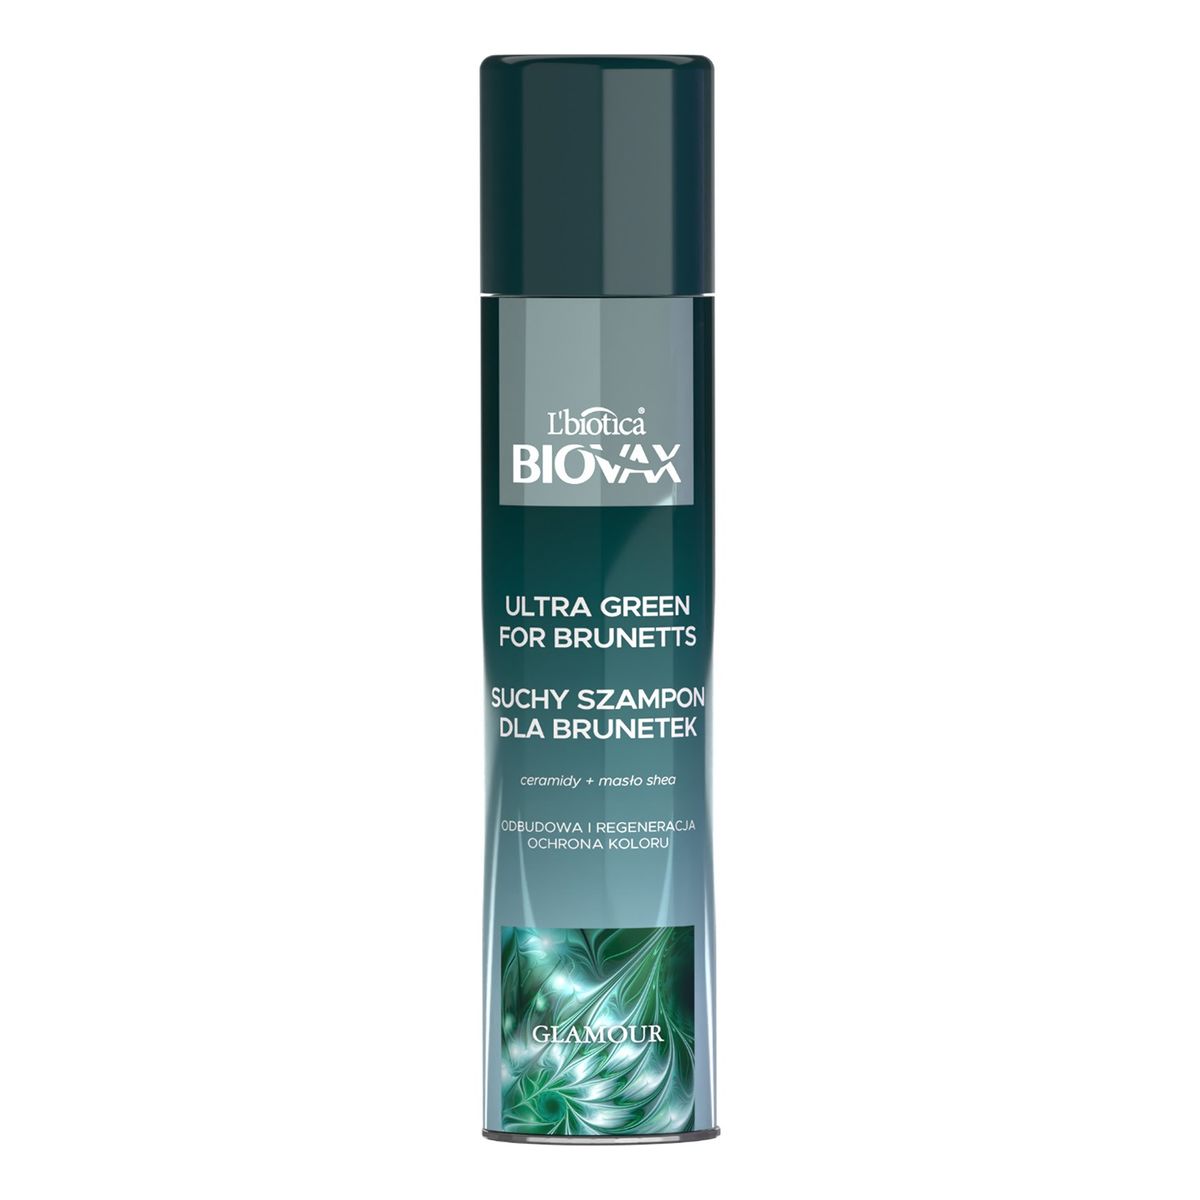 Lbiotica / Biovax Glamour Suchy Szampon do włosów dla brunetek - Ultra Green 200ml